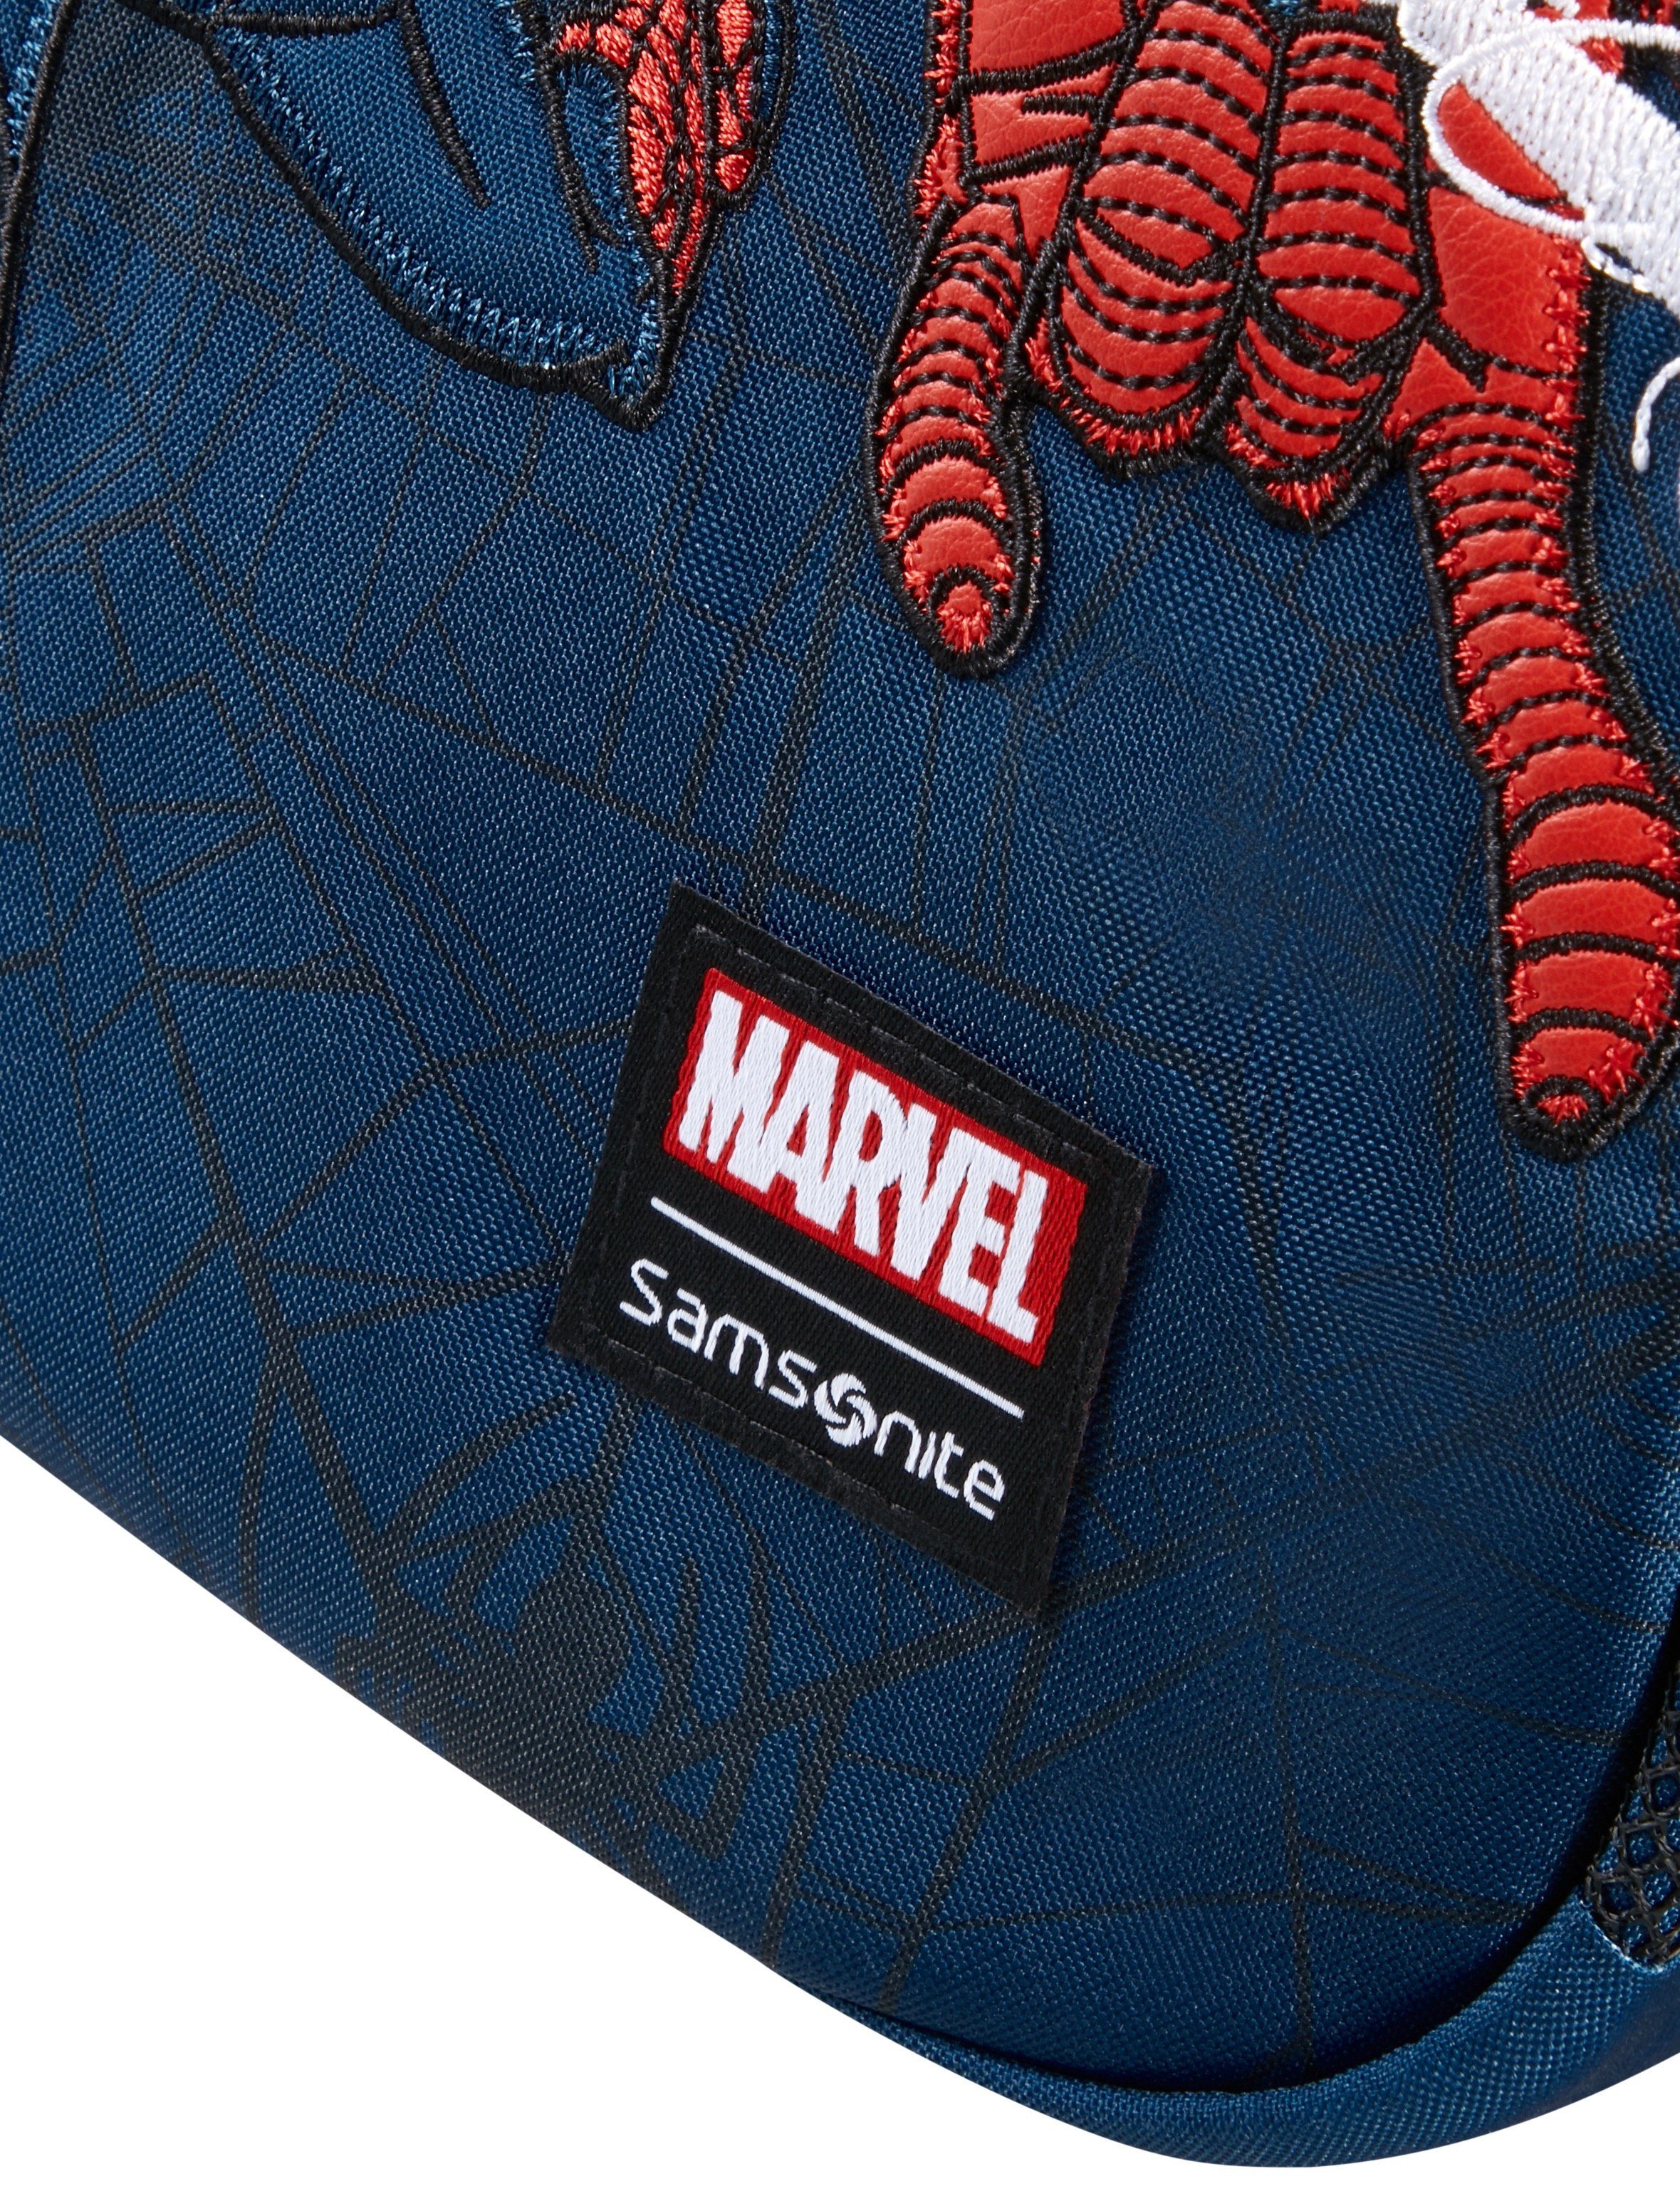 Kinderrucksack Marvel Disney aus Disney 2.0 Samsonite S+, Ultimate recyceltem Material